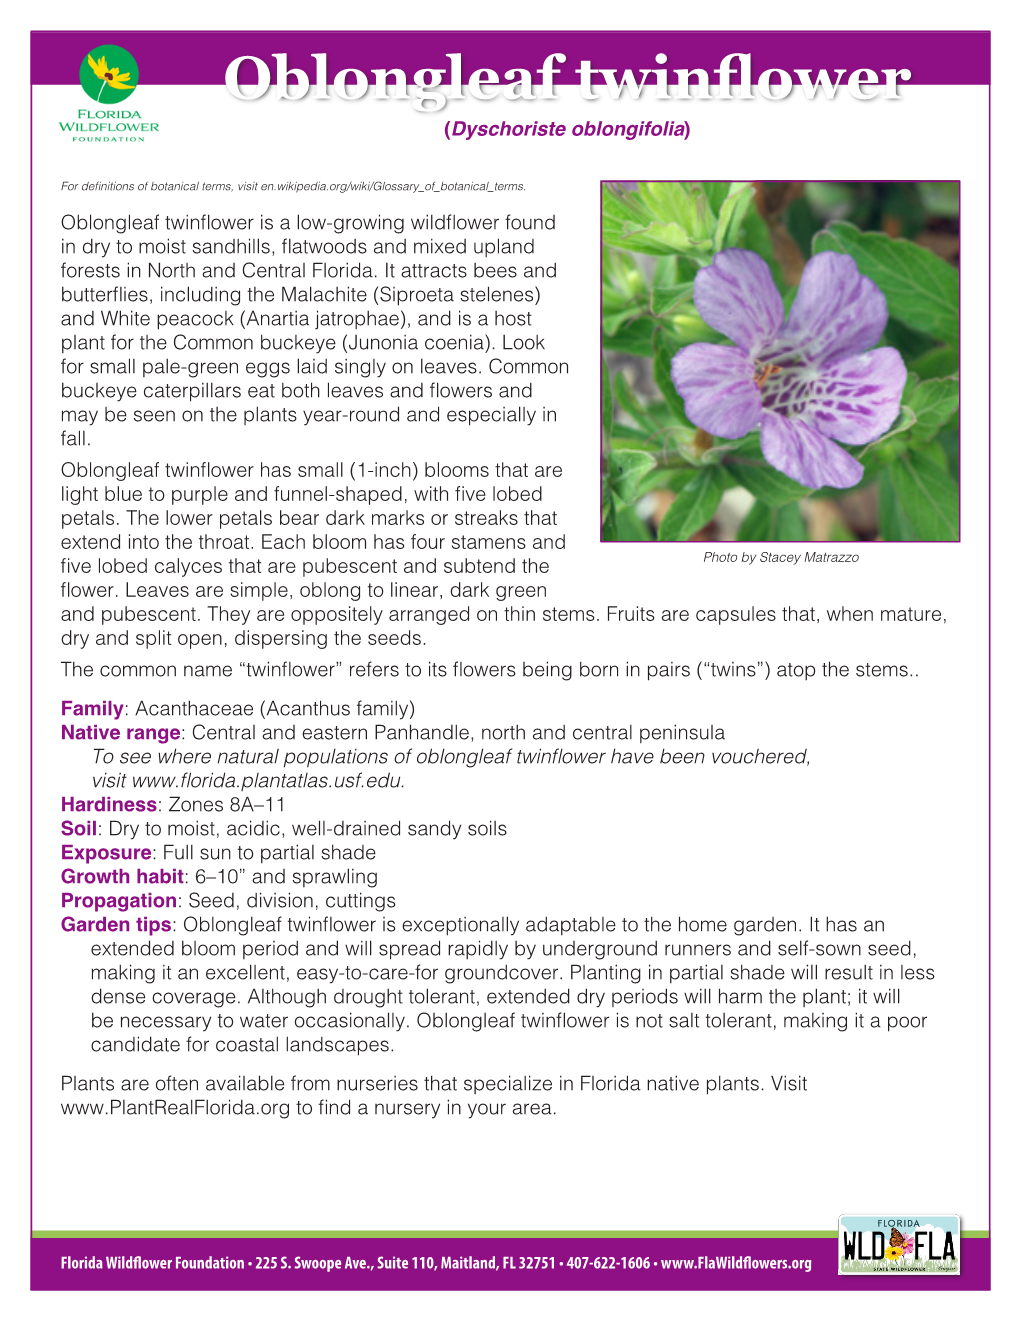 Oblongleaf Twinflower (Dyschoriste Oblongifolia)